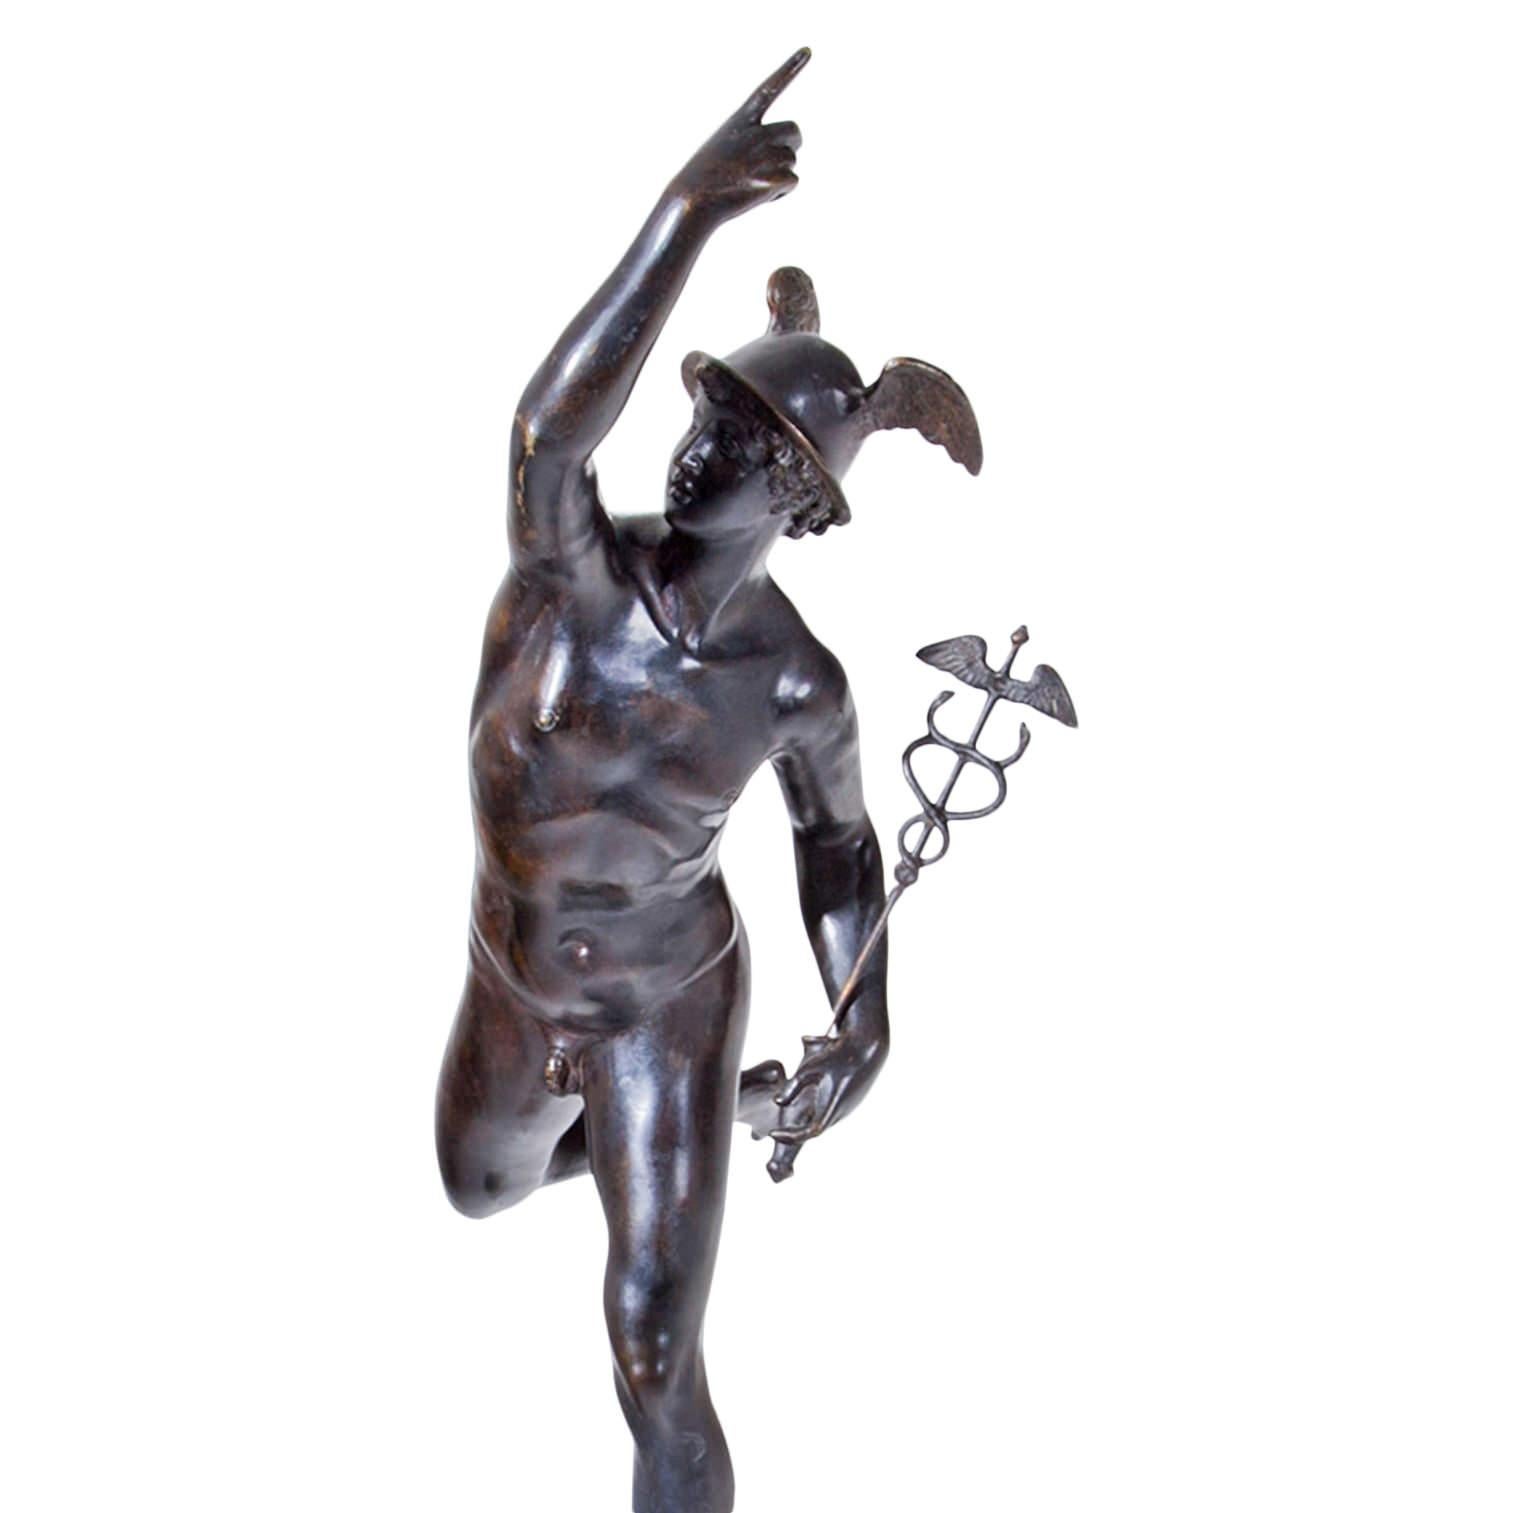 Hermes oder Merkur aus Bronze auf einem Sockel aus blauem Marmor nach der berühmten Skulptur von Giambologna.